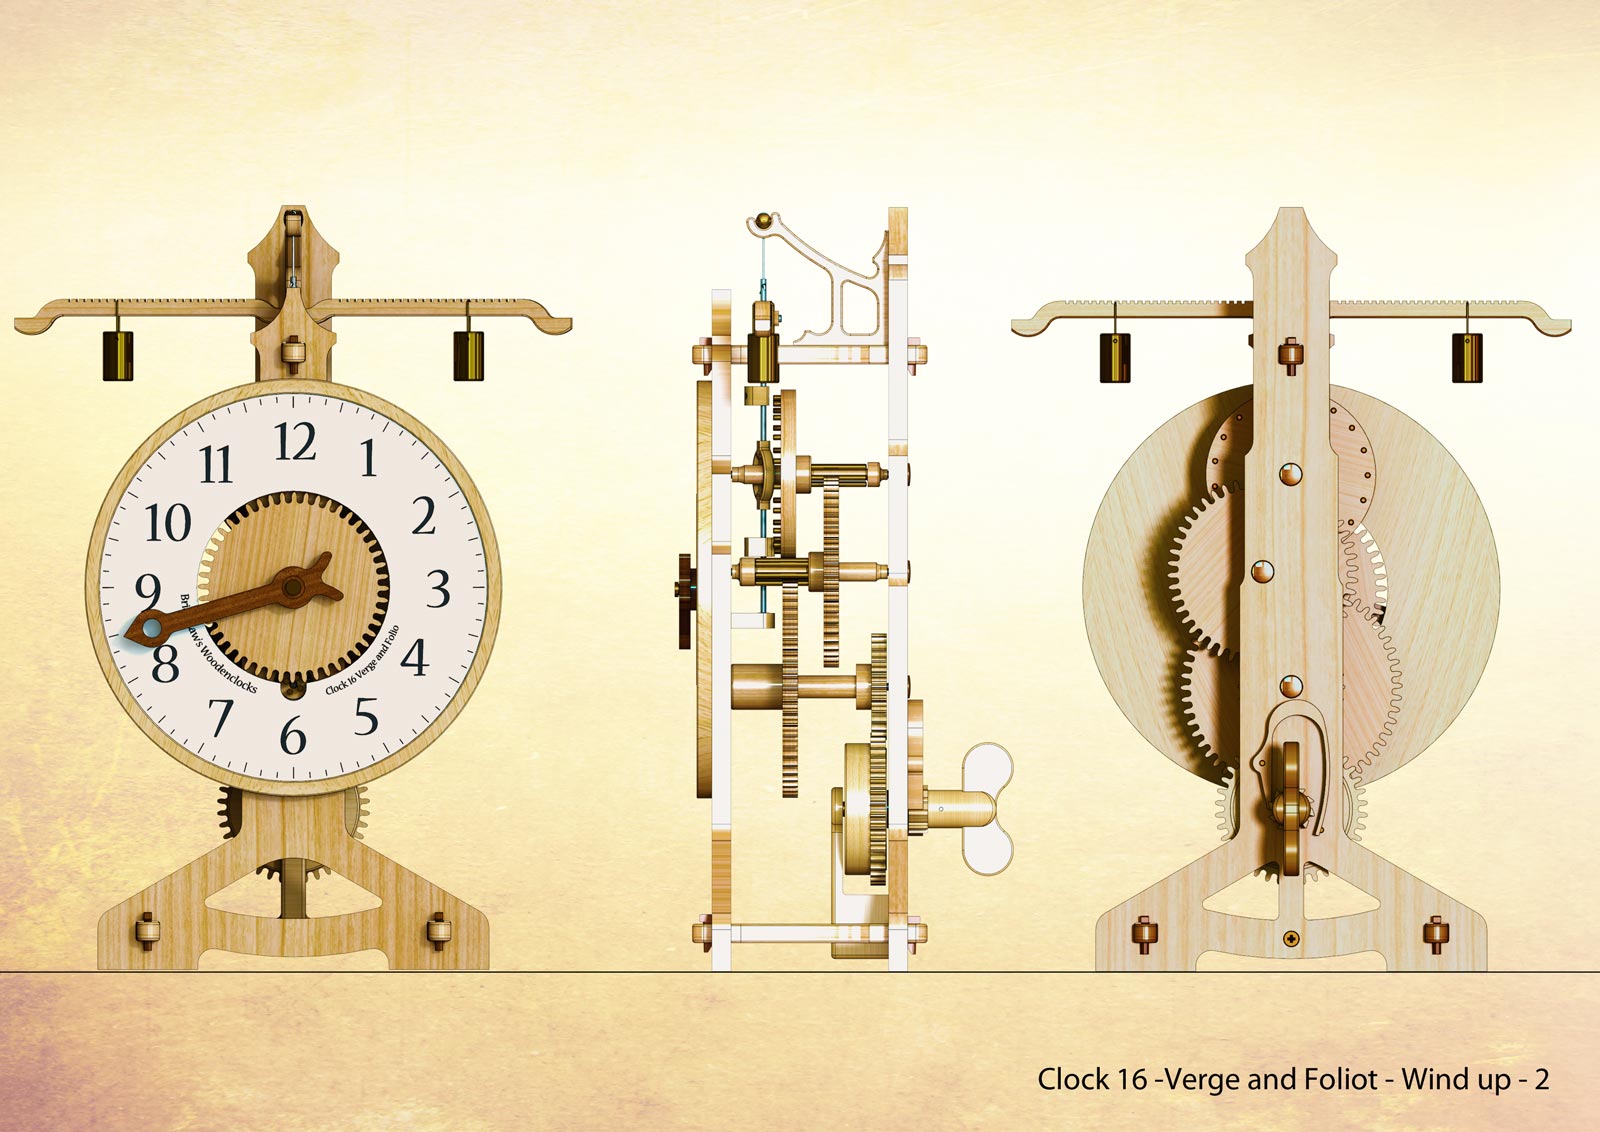 Часики / Clock (2023). Клок 16. Gw16 часы. Механизм внутри часов под названием " Verge and Foliot " контролирует часы. Биология часы 2023